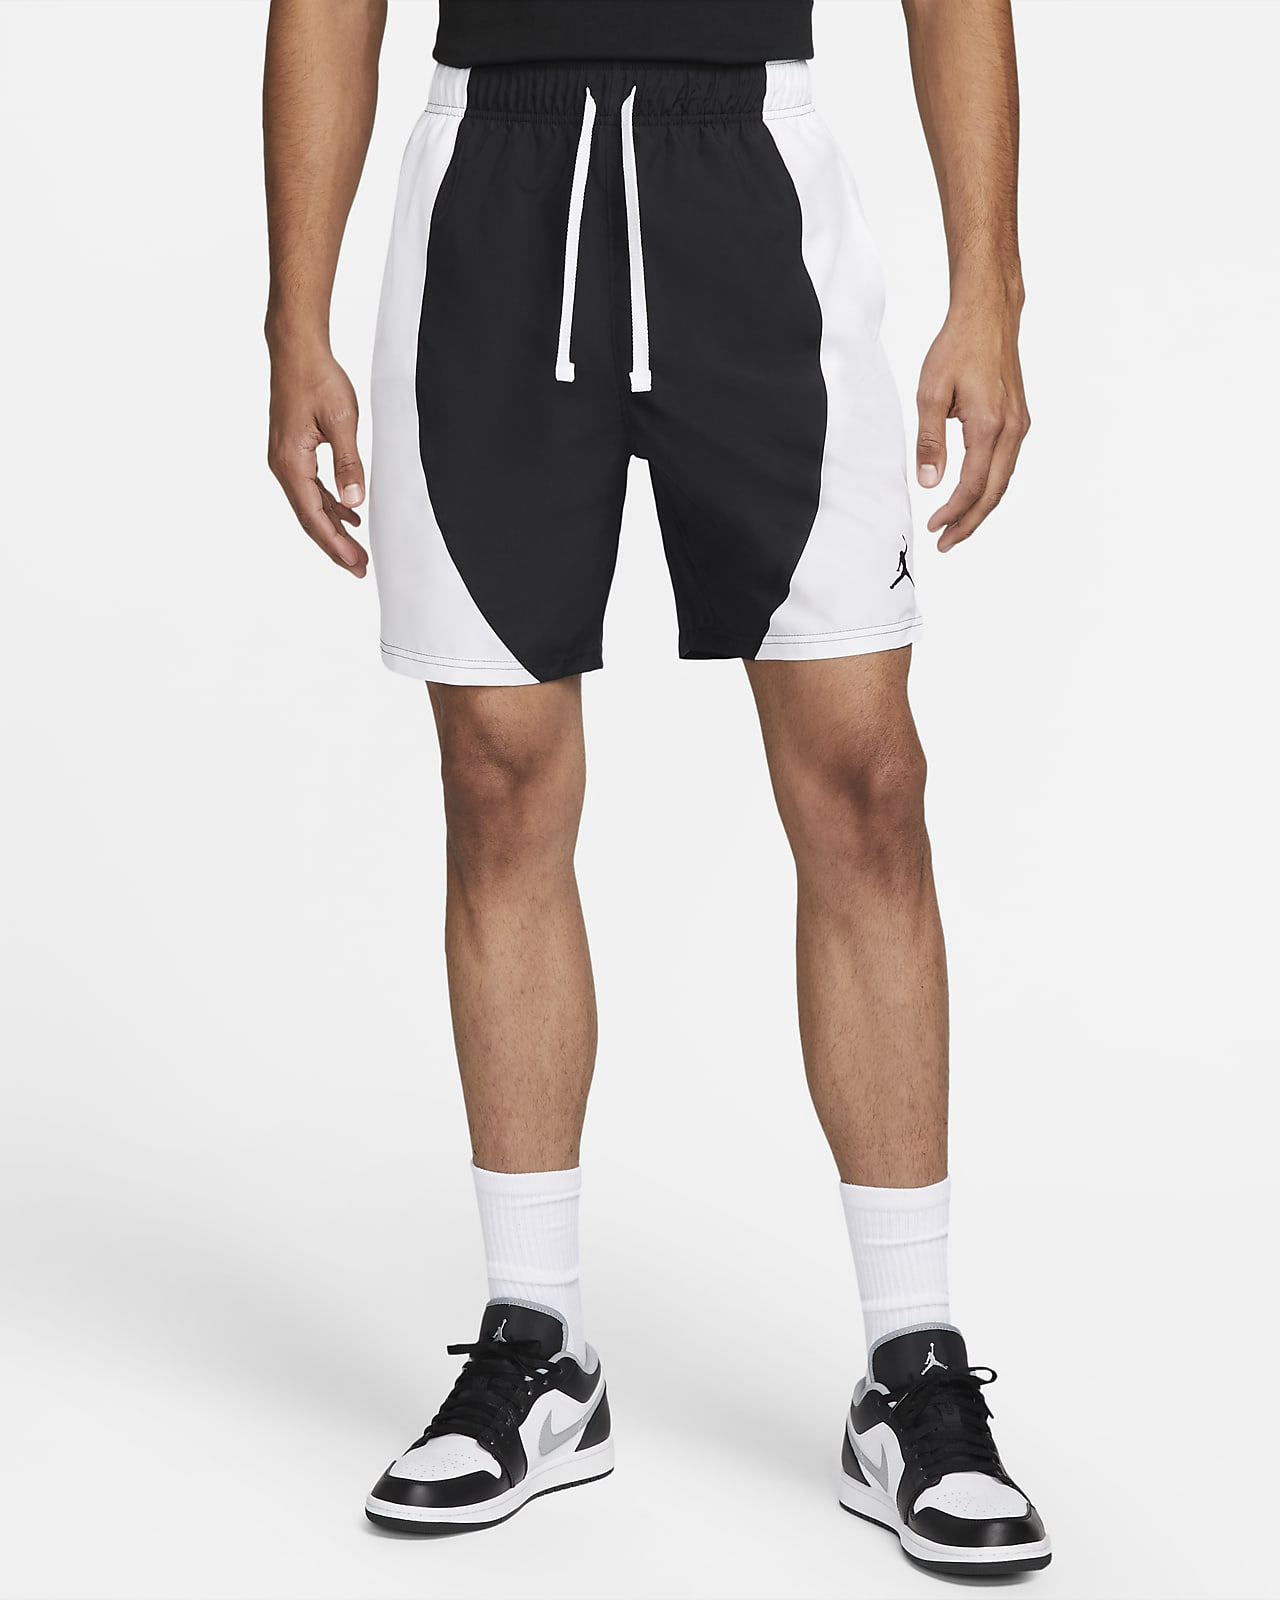 Jordan Sport Dri-FIT Pantalons curts de teixit Woven - Home